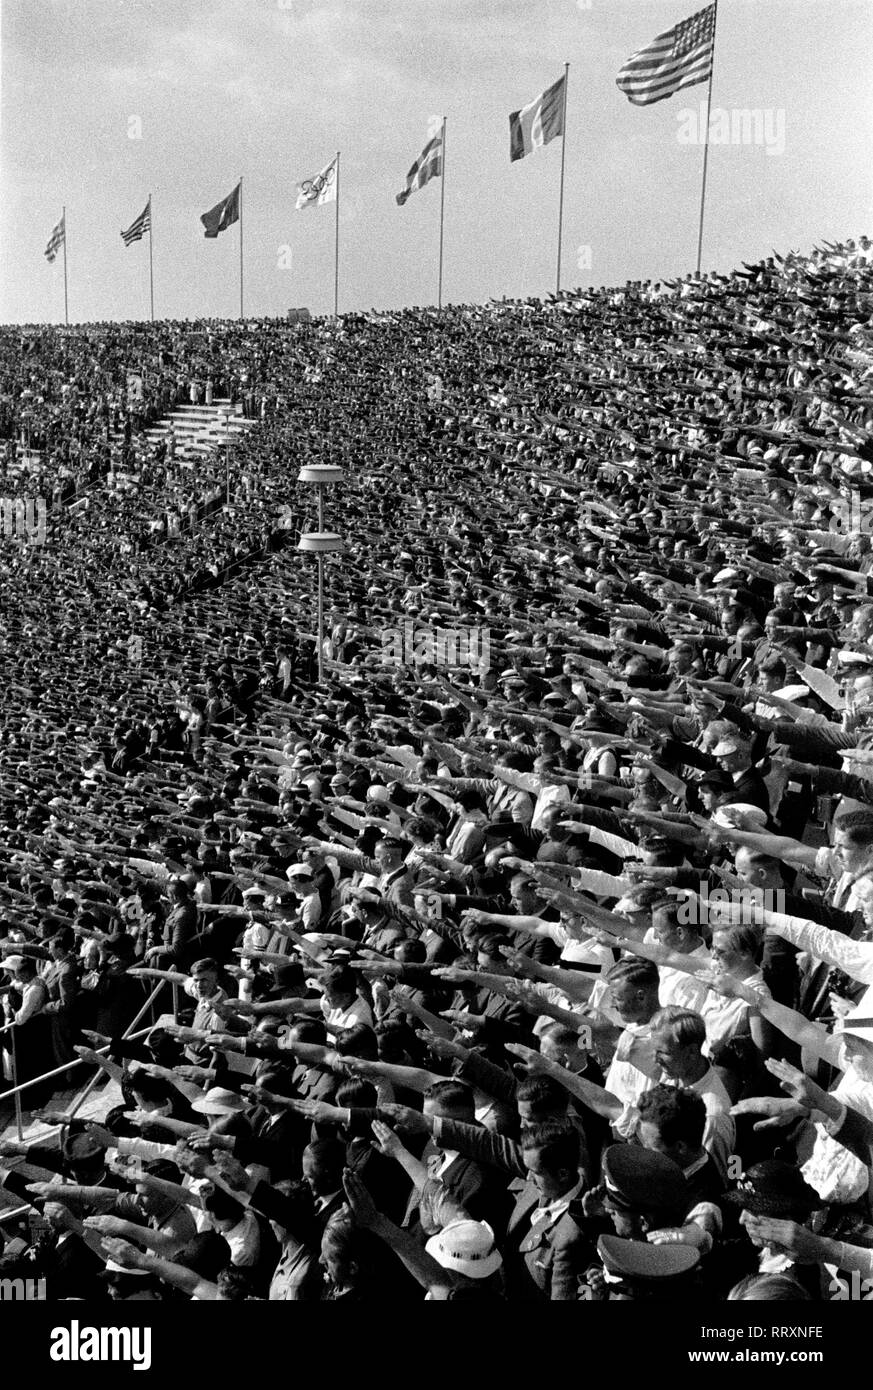 Jeux Olympiques d'été 1936 - L'Allemagne, Troisième Reich - Jeux Olympiques Jeux Olympiques d'été de 1936, à Berlin. Foule à l'intérieur du stade de faire le salut hitlérien. L'image date d'août 1936. Photo Erich Andres Banque D'Images